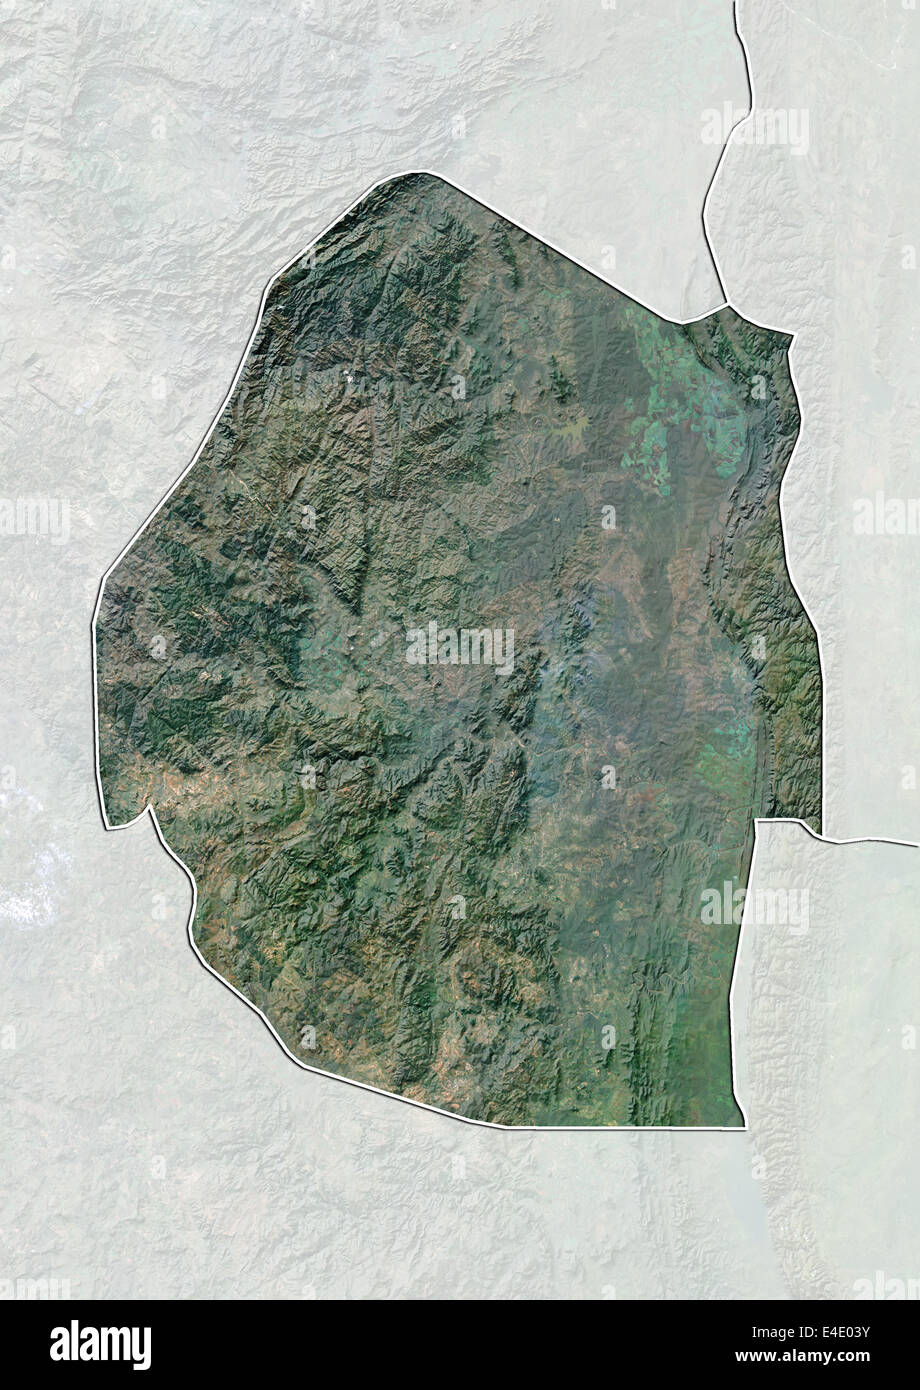 Le Swaziland, image satellite avec effet de choc, avec bordure et masque Banque D'Images